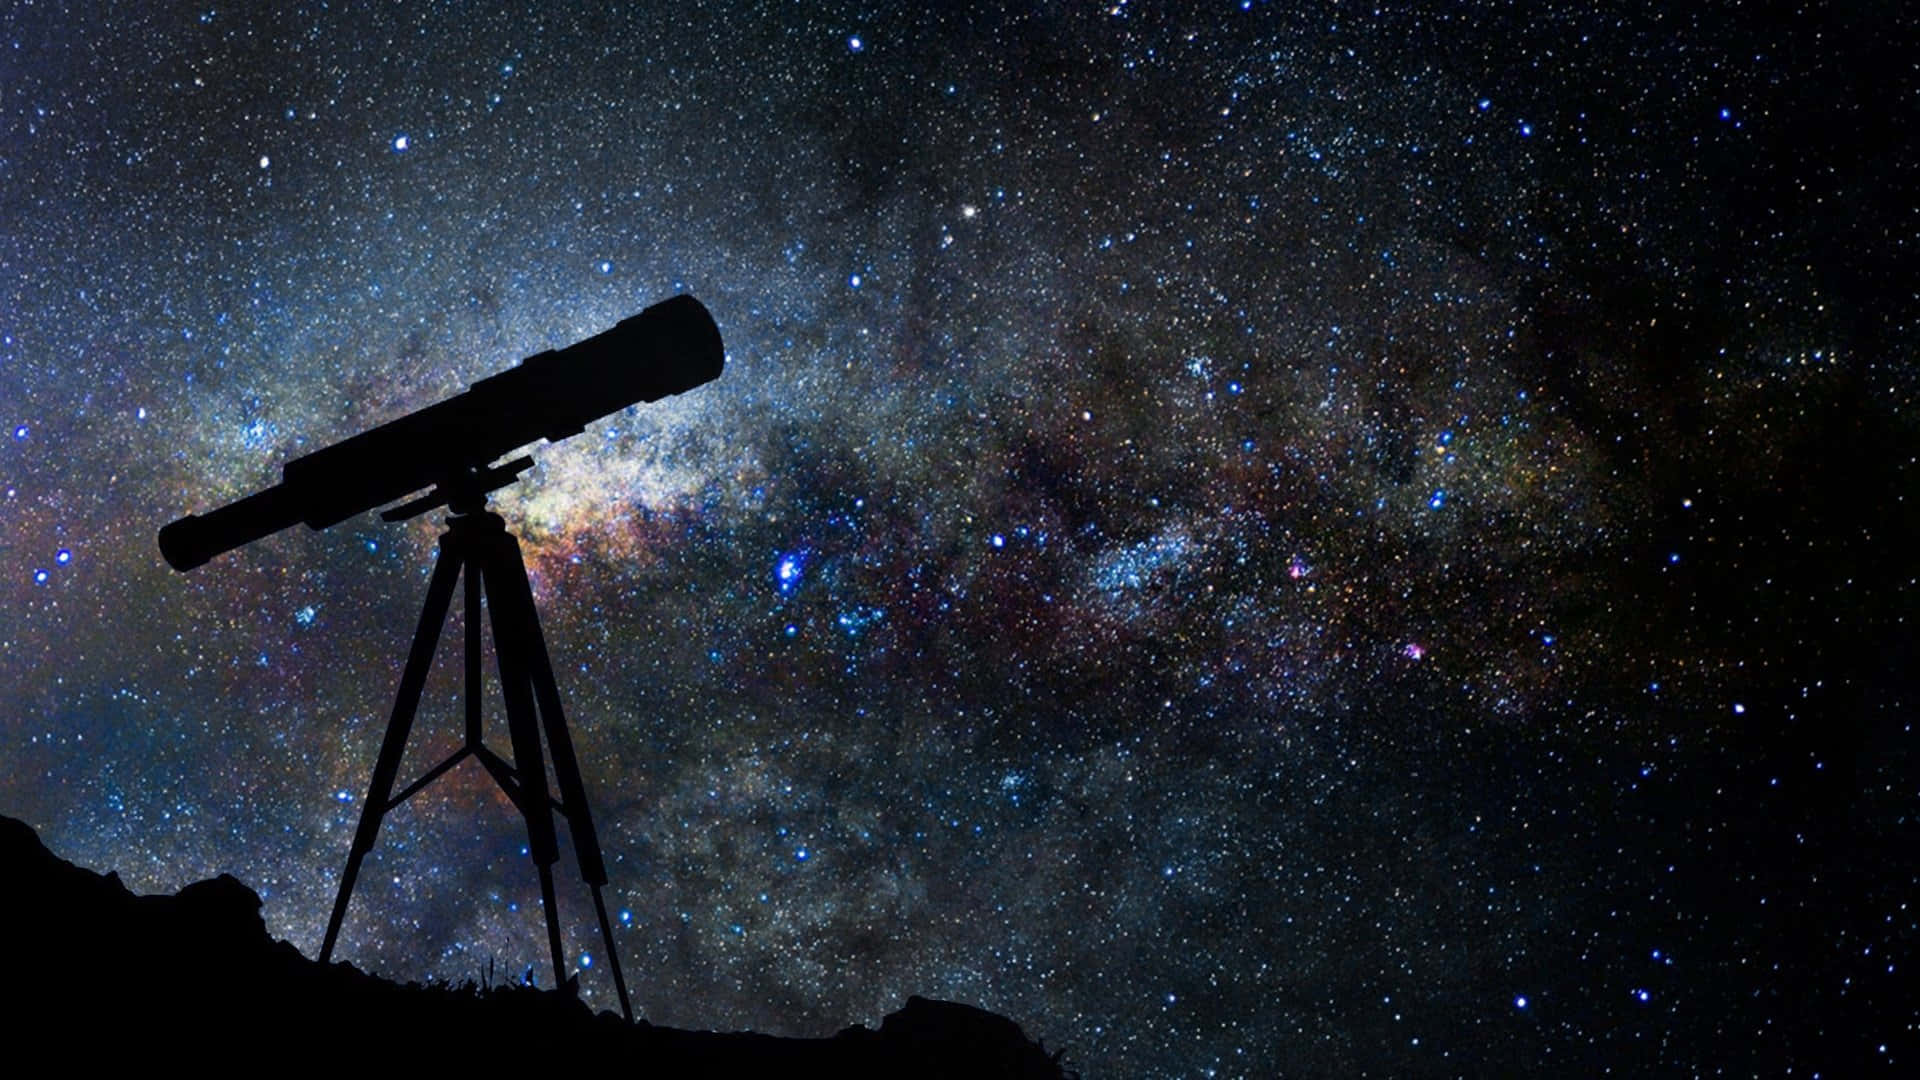 Einastronom Beobachtet Das Universum Mit Einem Teleskop.